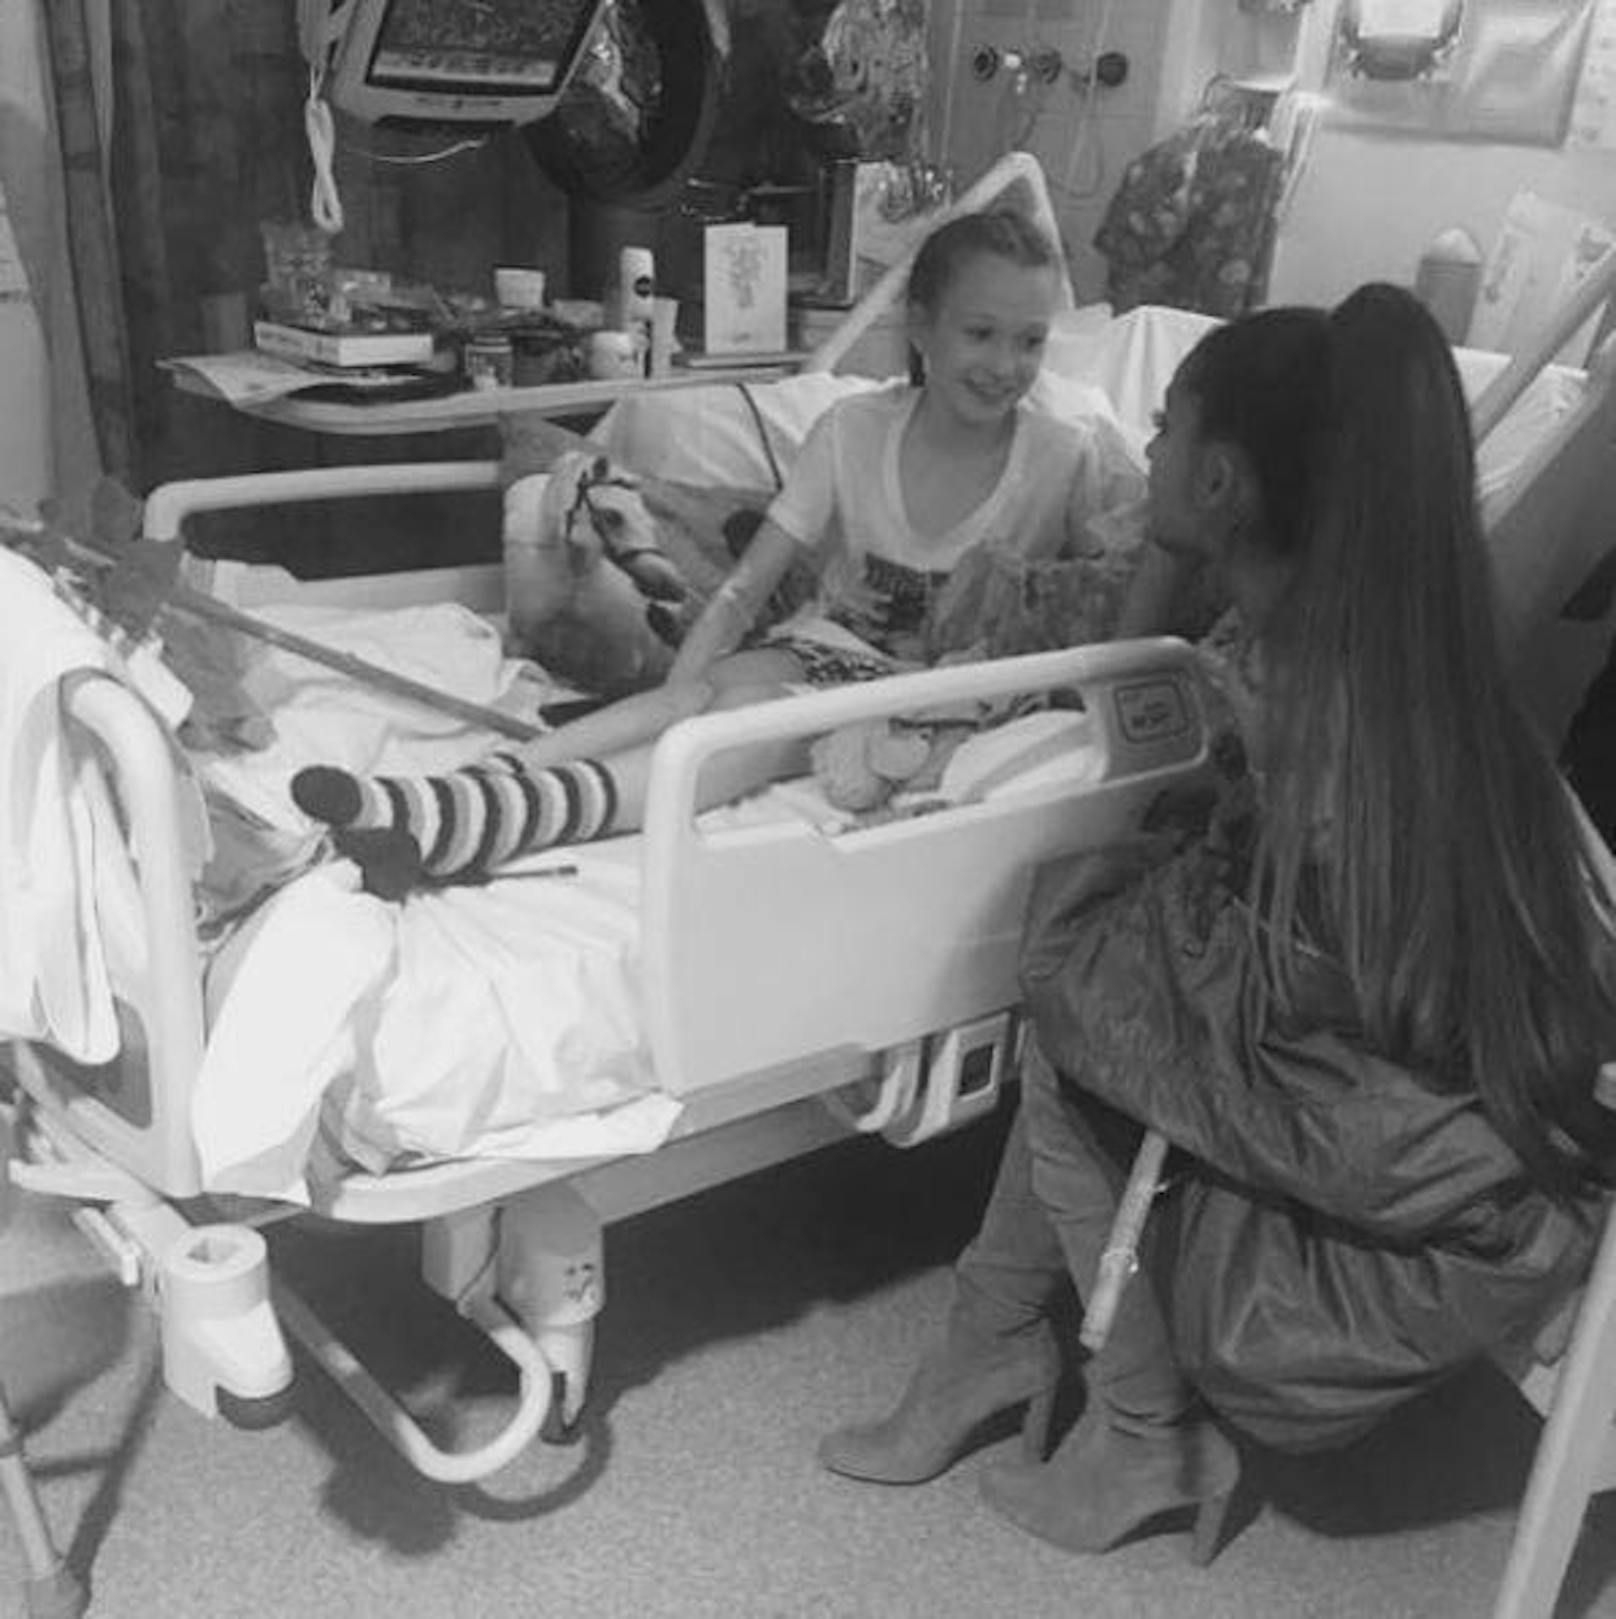 03.06.2017: Ariana Grande besucht verletzte Kinder in Spital.